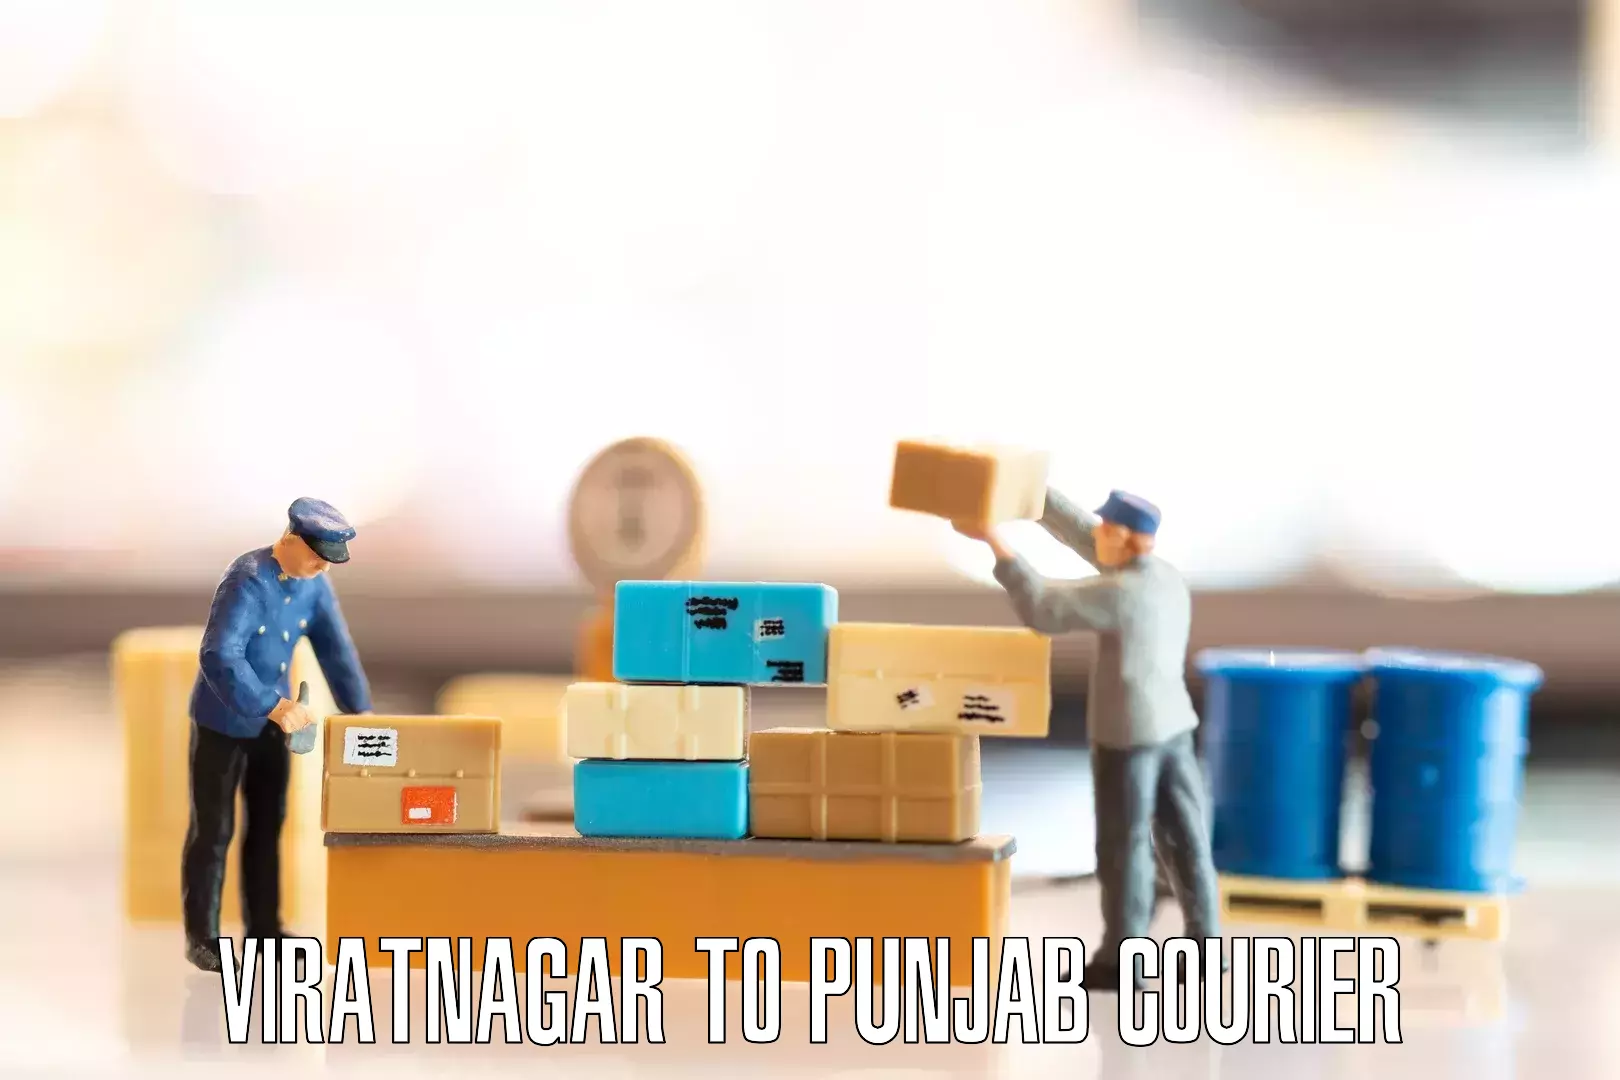 Furniture transport and storage Viratnagar to Patti Tarn Tara